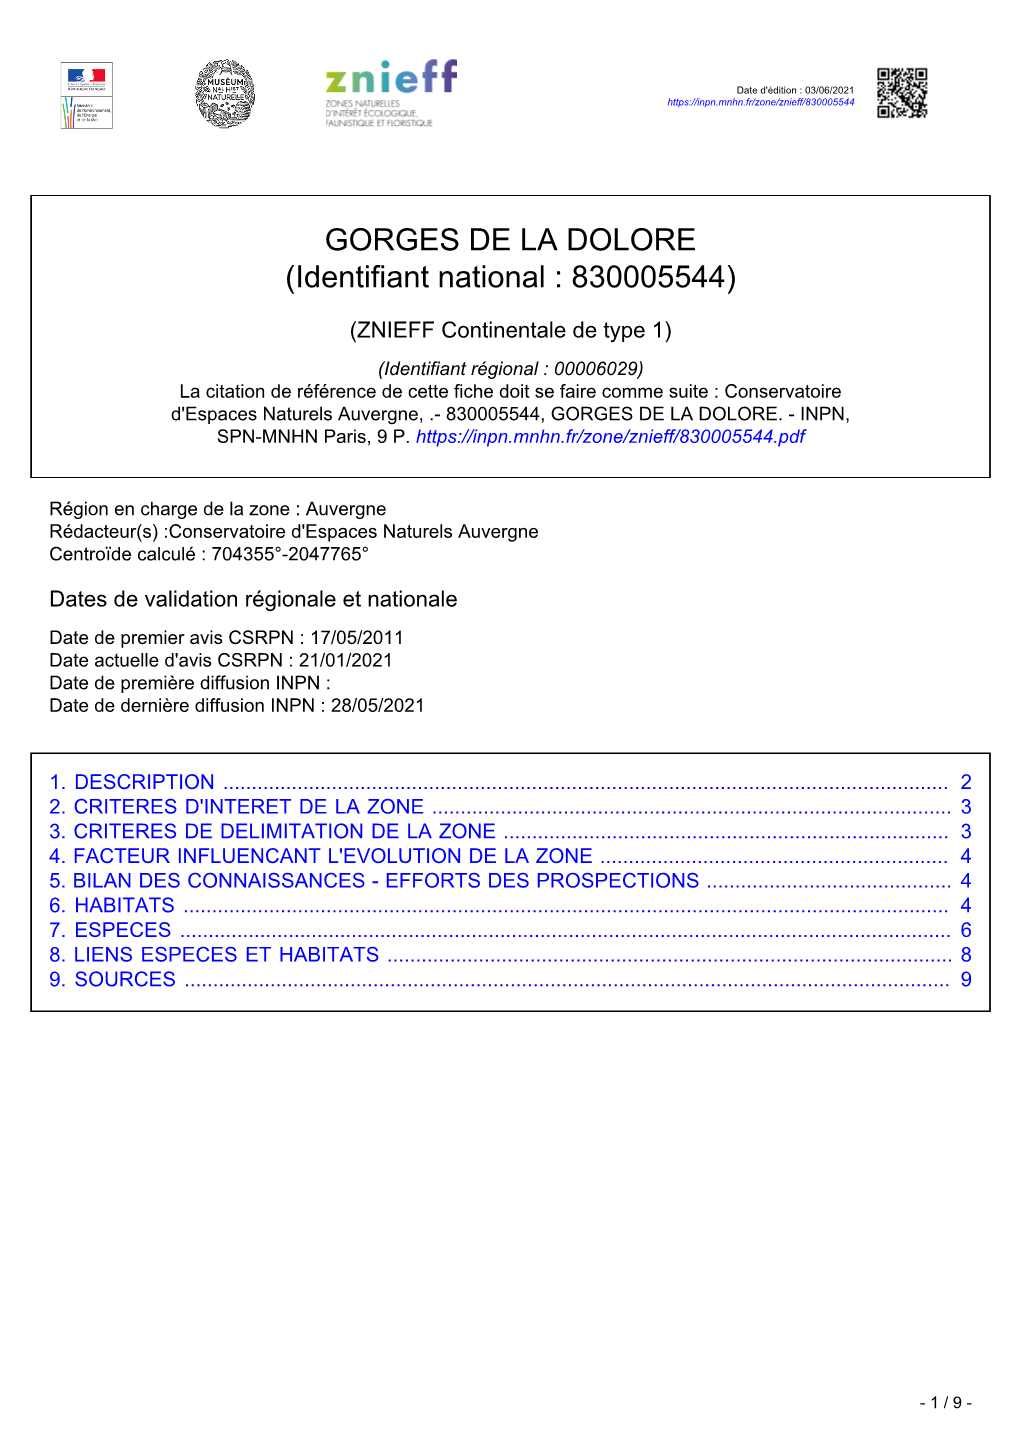 GORGES DE LA DOLORE (Identifiant National : 830005544)